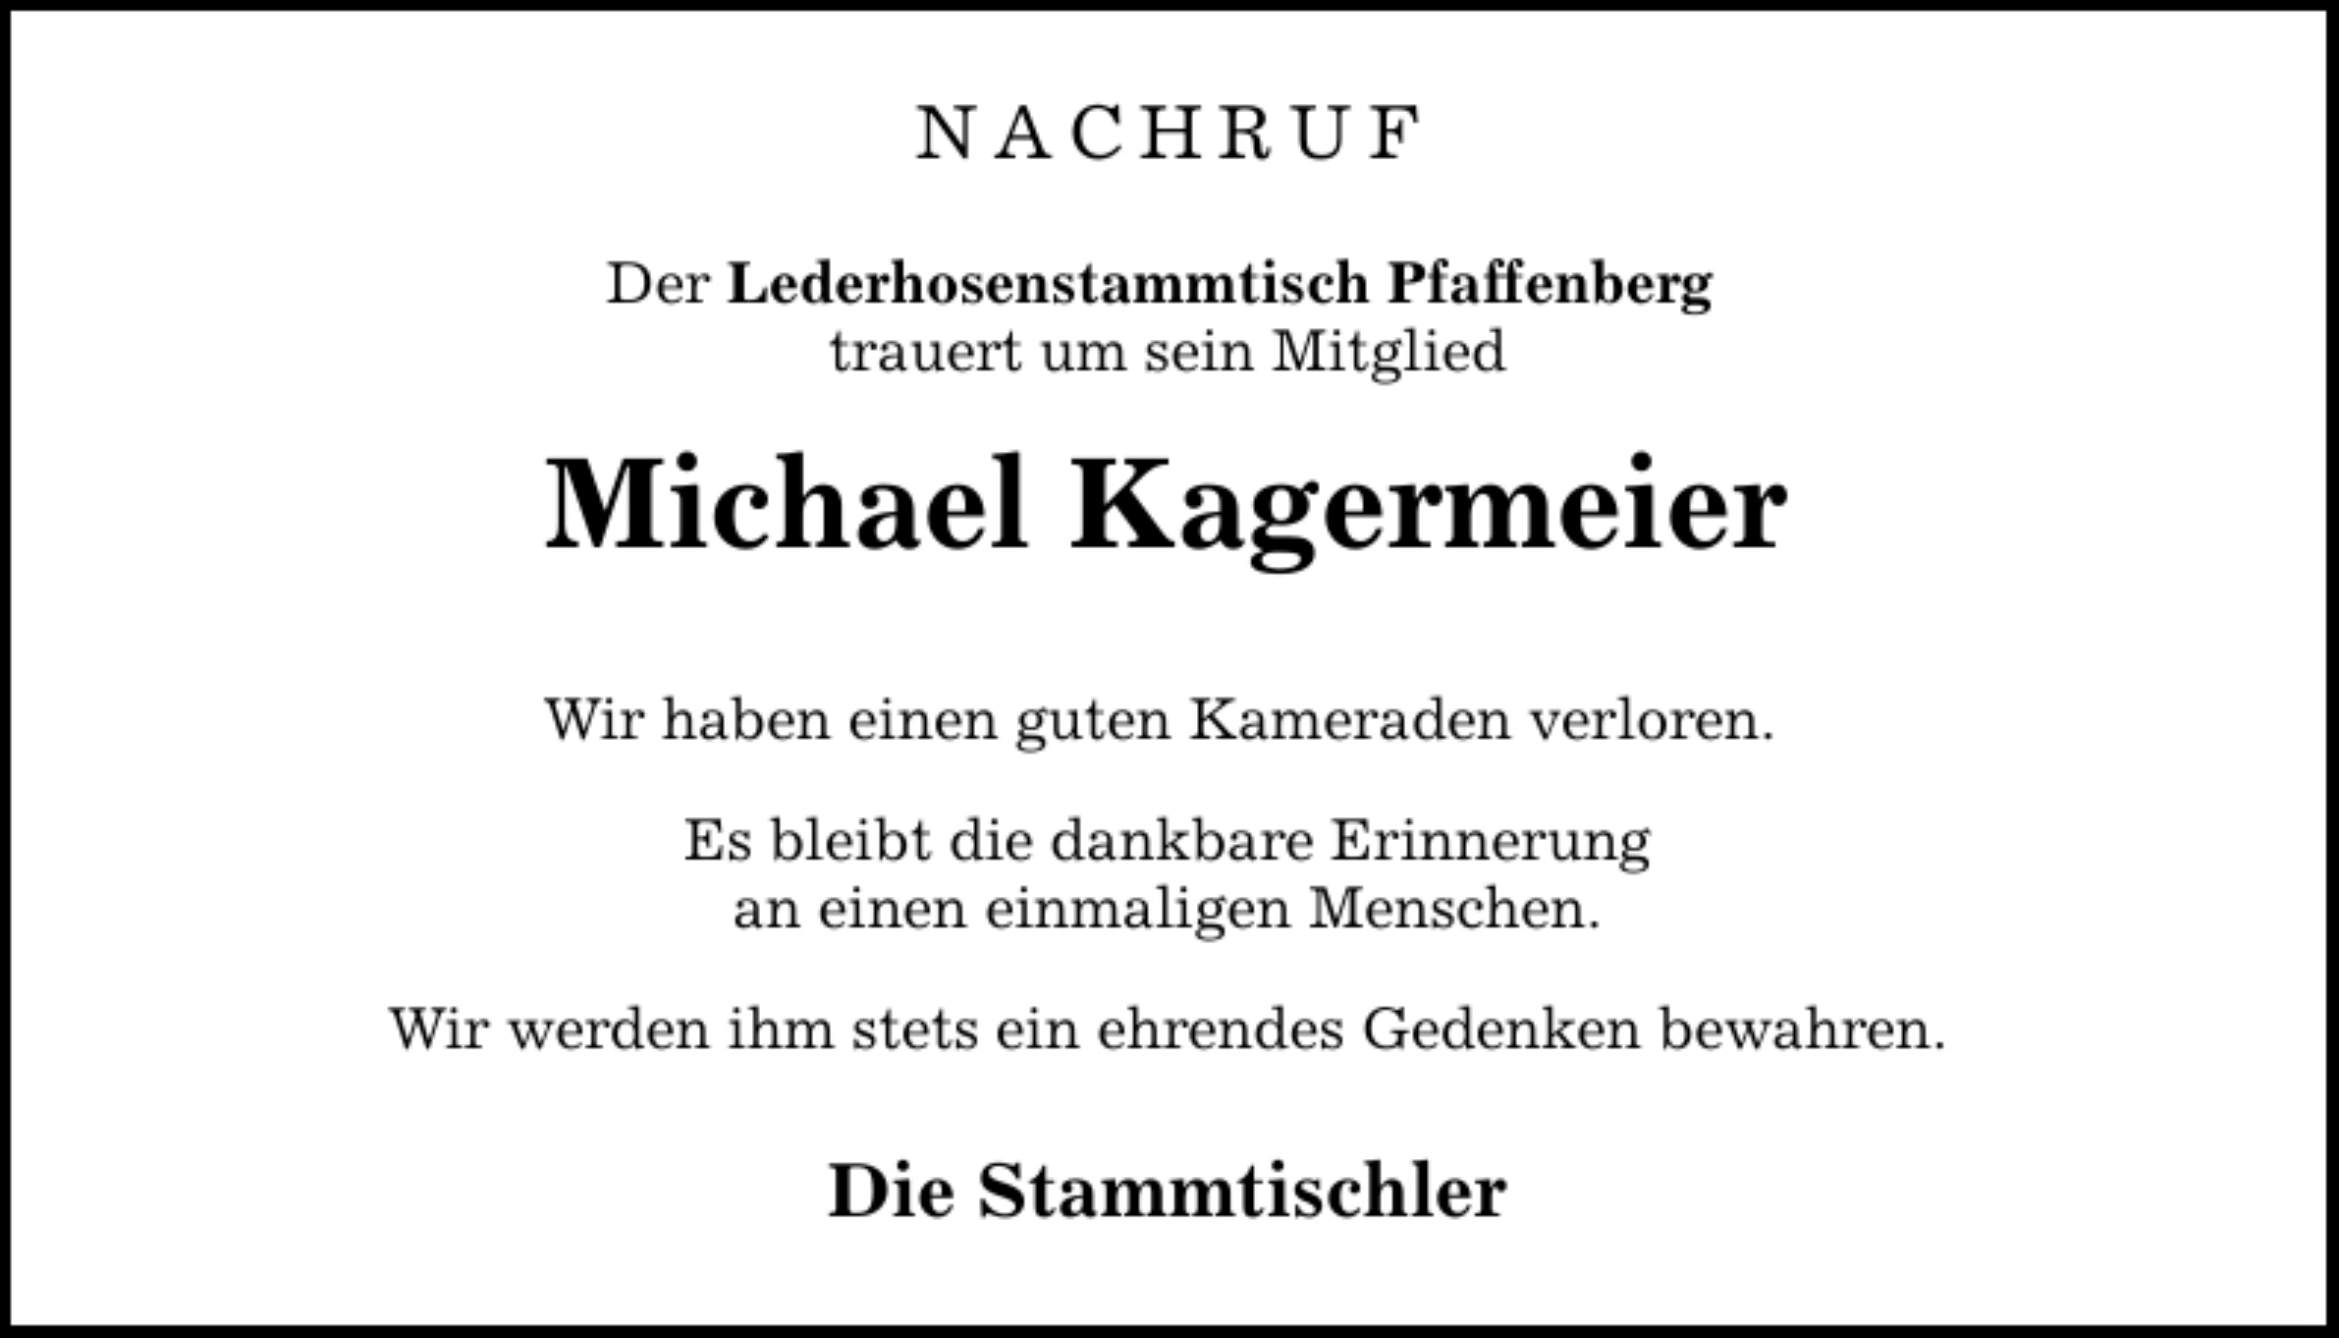 NACHRUF Der Lederhosenstammtisch Pfaffenberg trauert um sein Mitglied Michael Kagermeier Wir haben einen guten Kameraden verloren. Es bleibt die dankbare Erinnerung an einen einmaligen Menschen. Wir werden ihm stets ein ehrendes Gedenken bewahren. Die Stammtischler